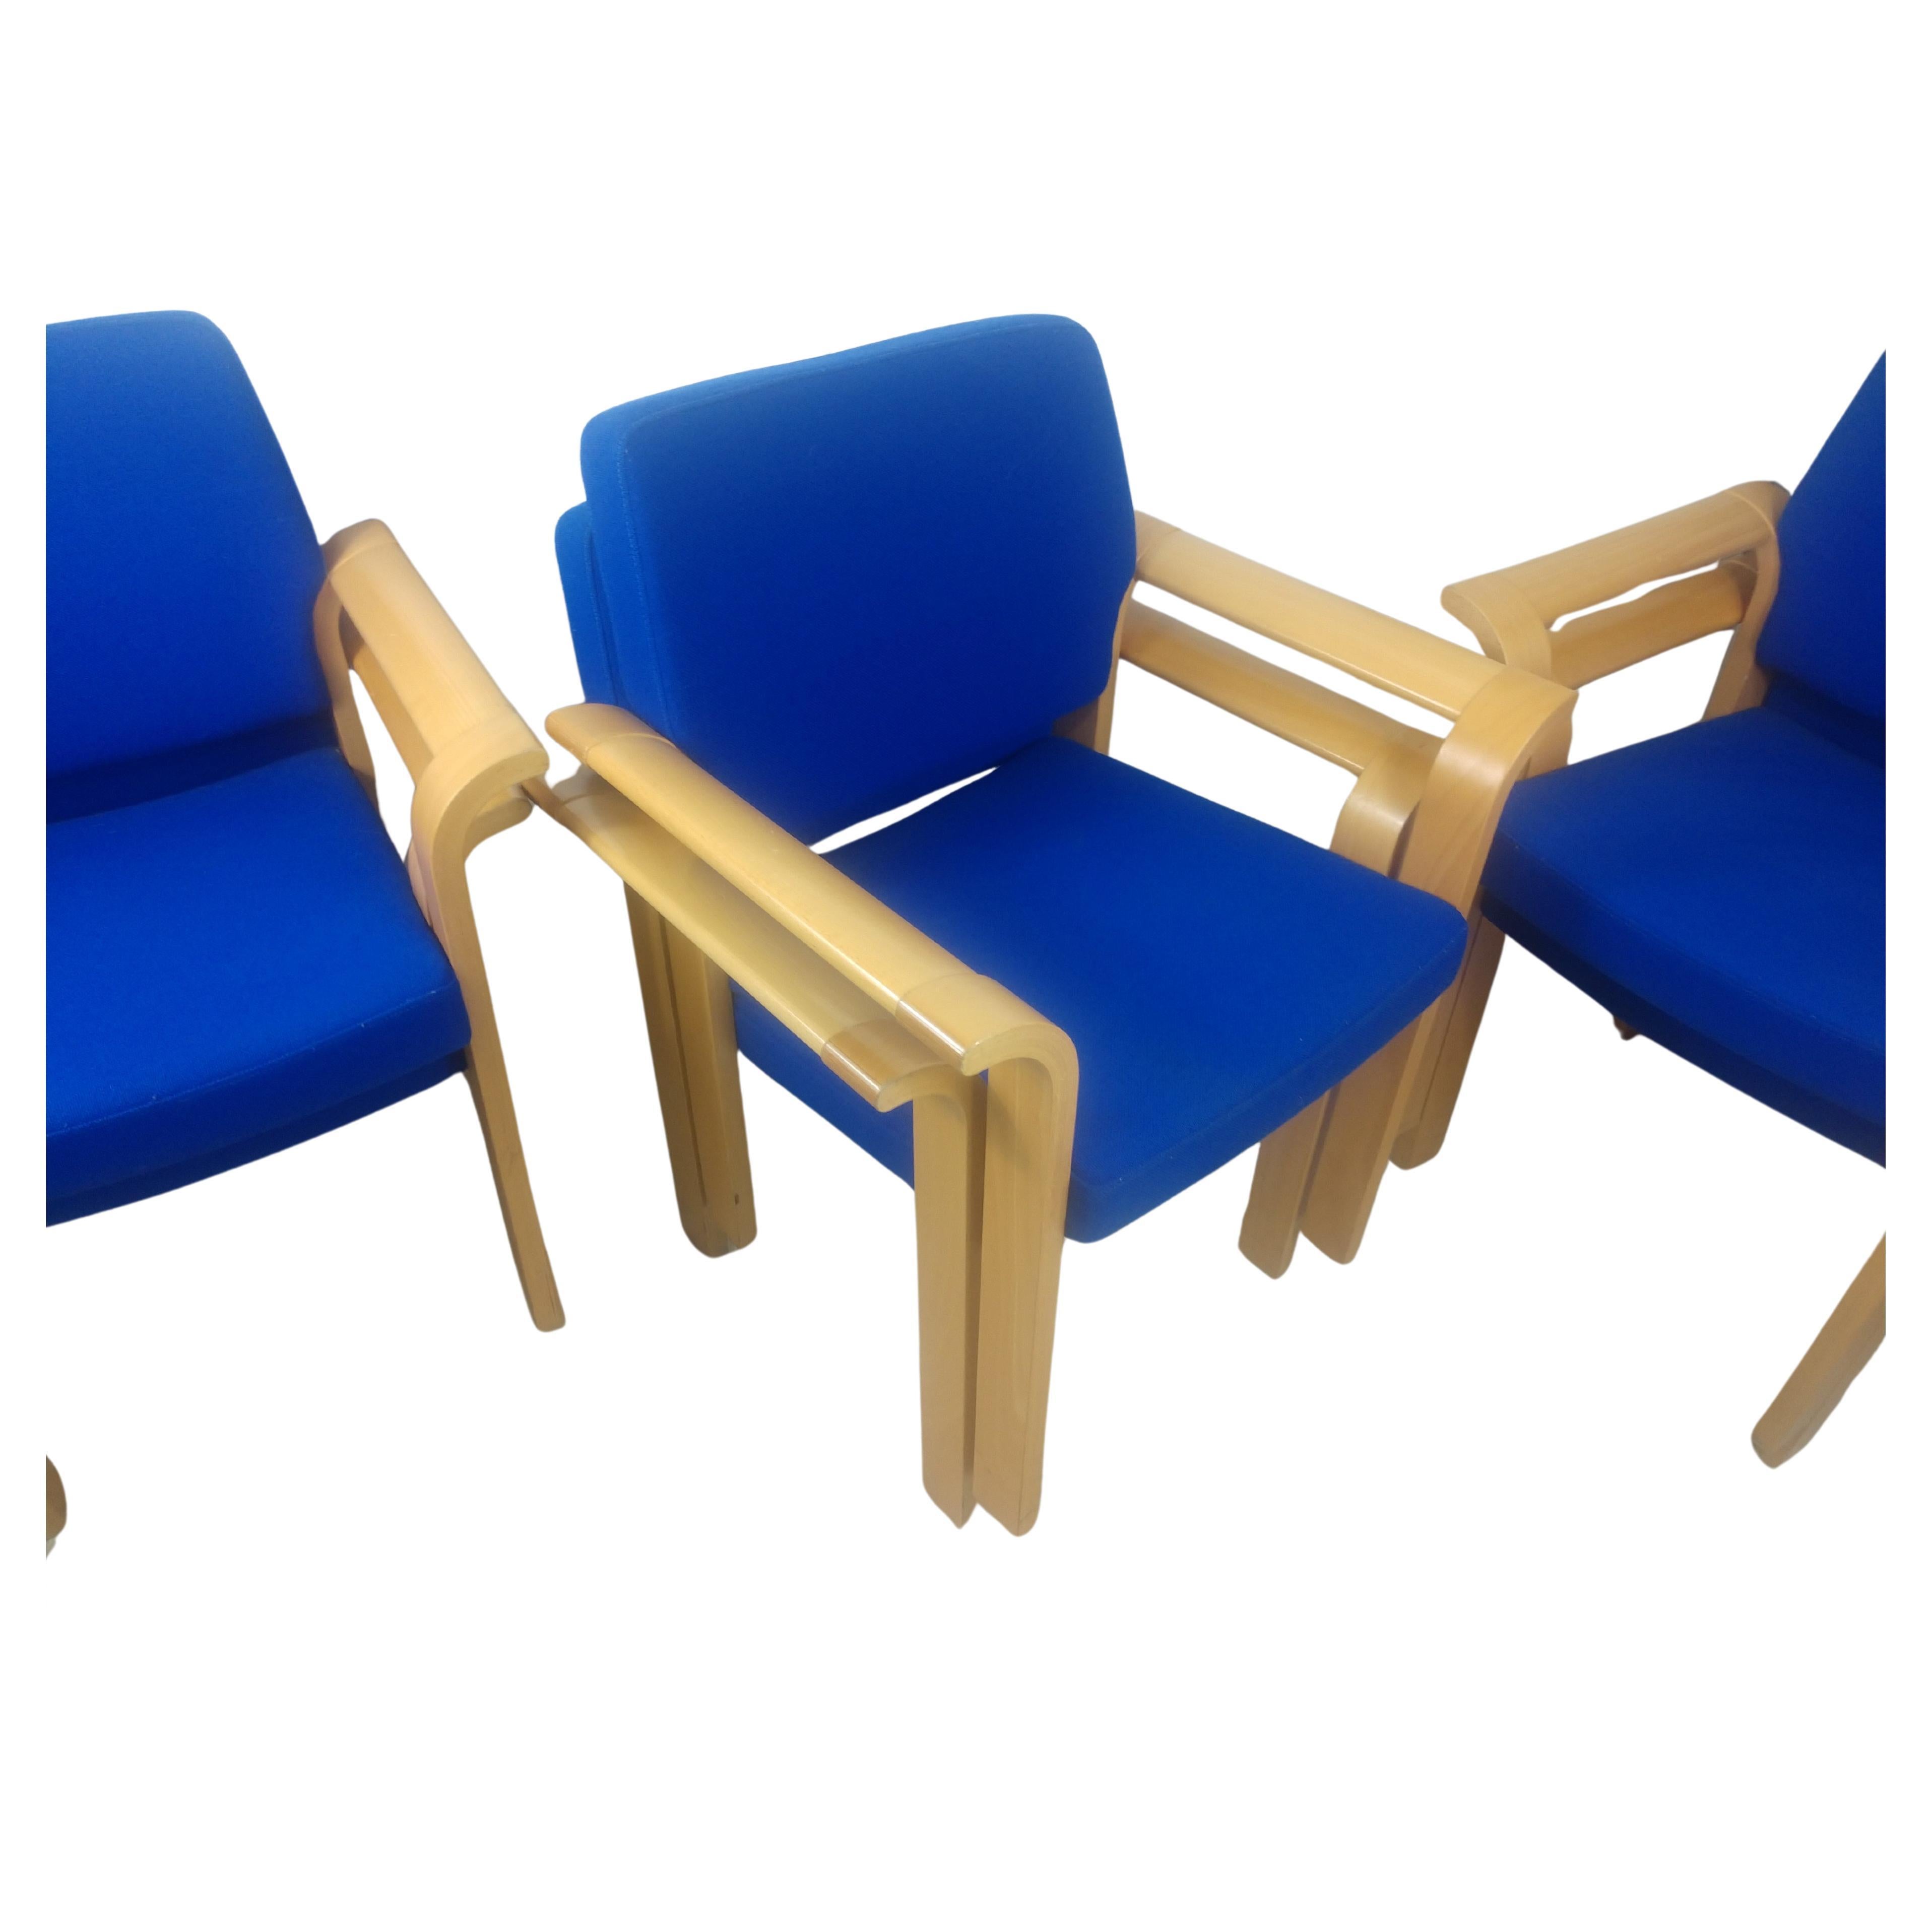 Fabelhaftes Set aus stapelbaren Konferenzstühlen aus Eiche aus der Jahrhundertmitte. Ausgestellte Bugholzarme aus Weißeiche, gepolstert mit einem blauen, knollenartigen Stoff. Entworfen von Rud Thygesen und Johnny Sorensen für Magnus Olsen. Die